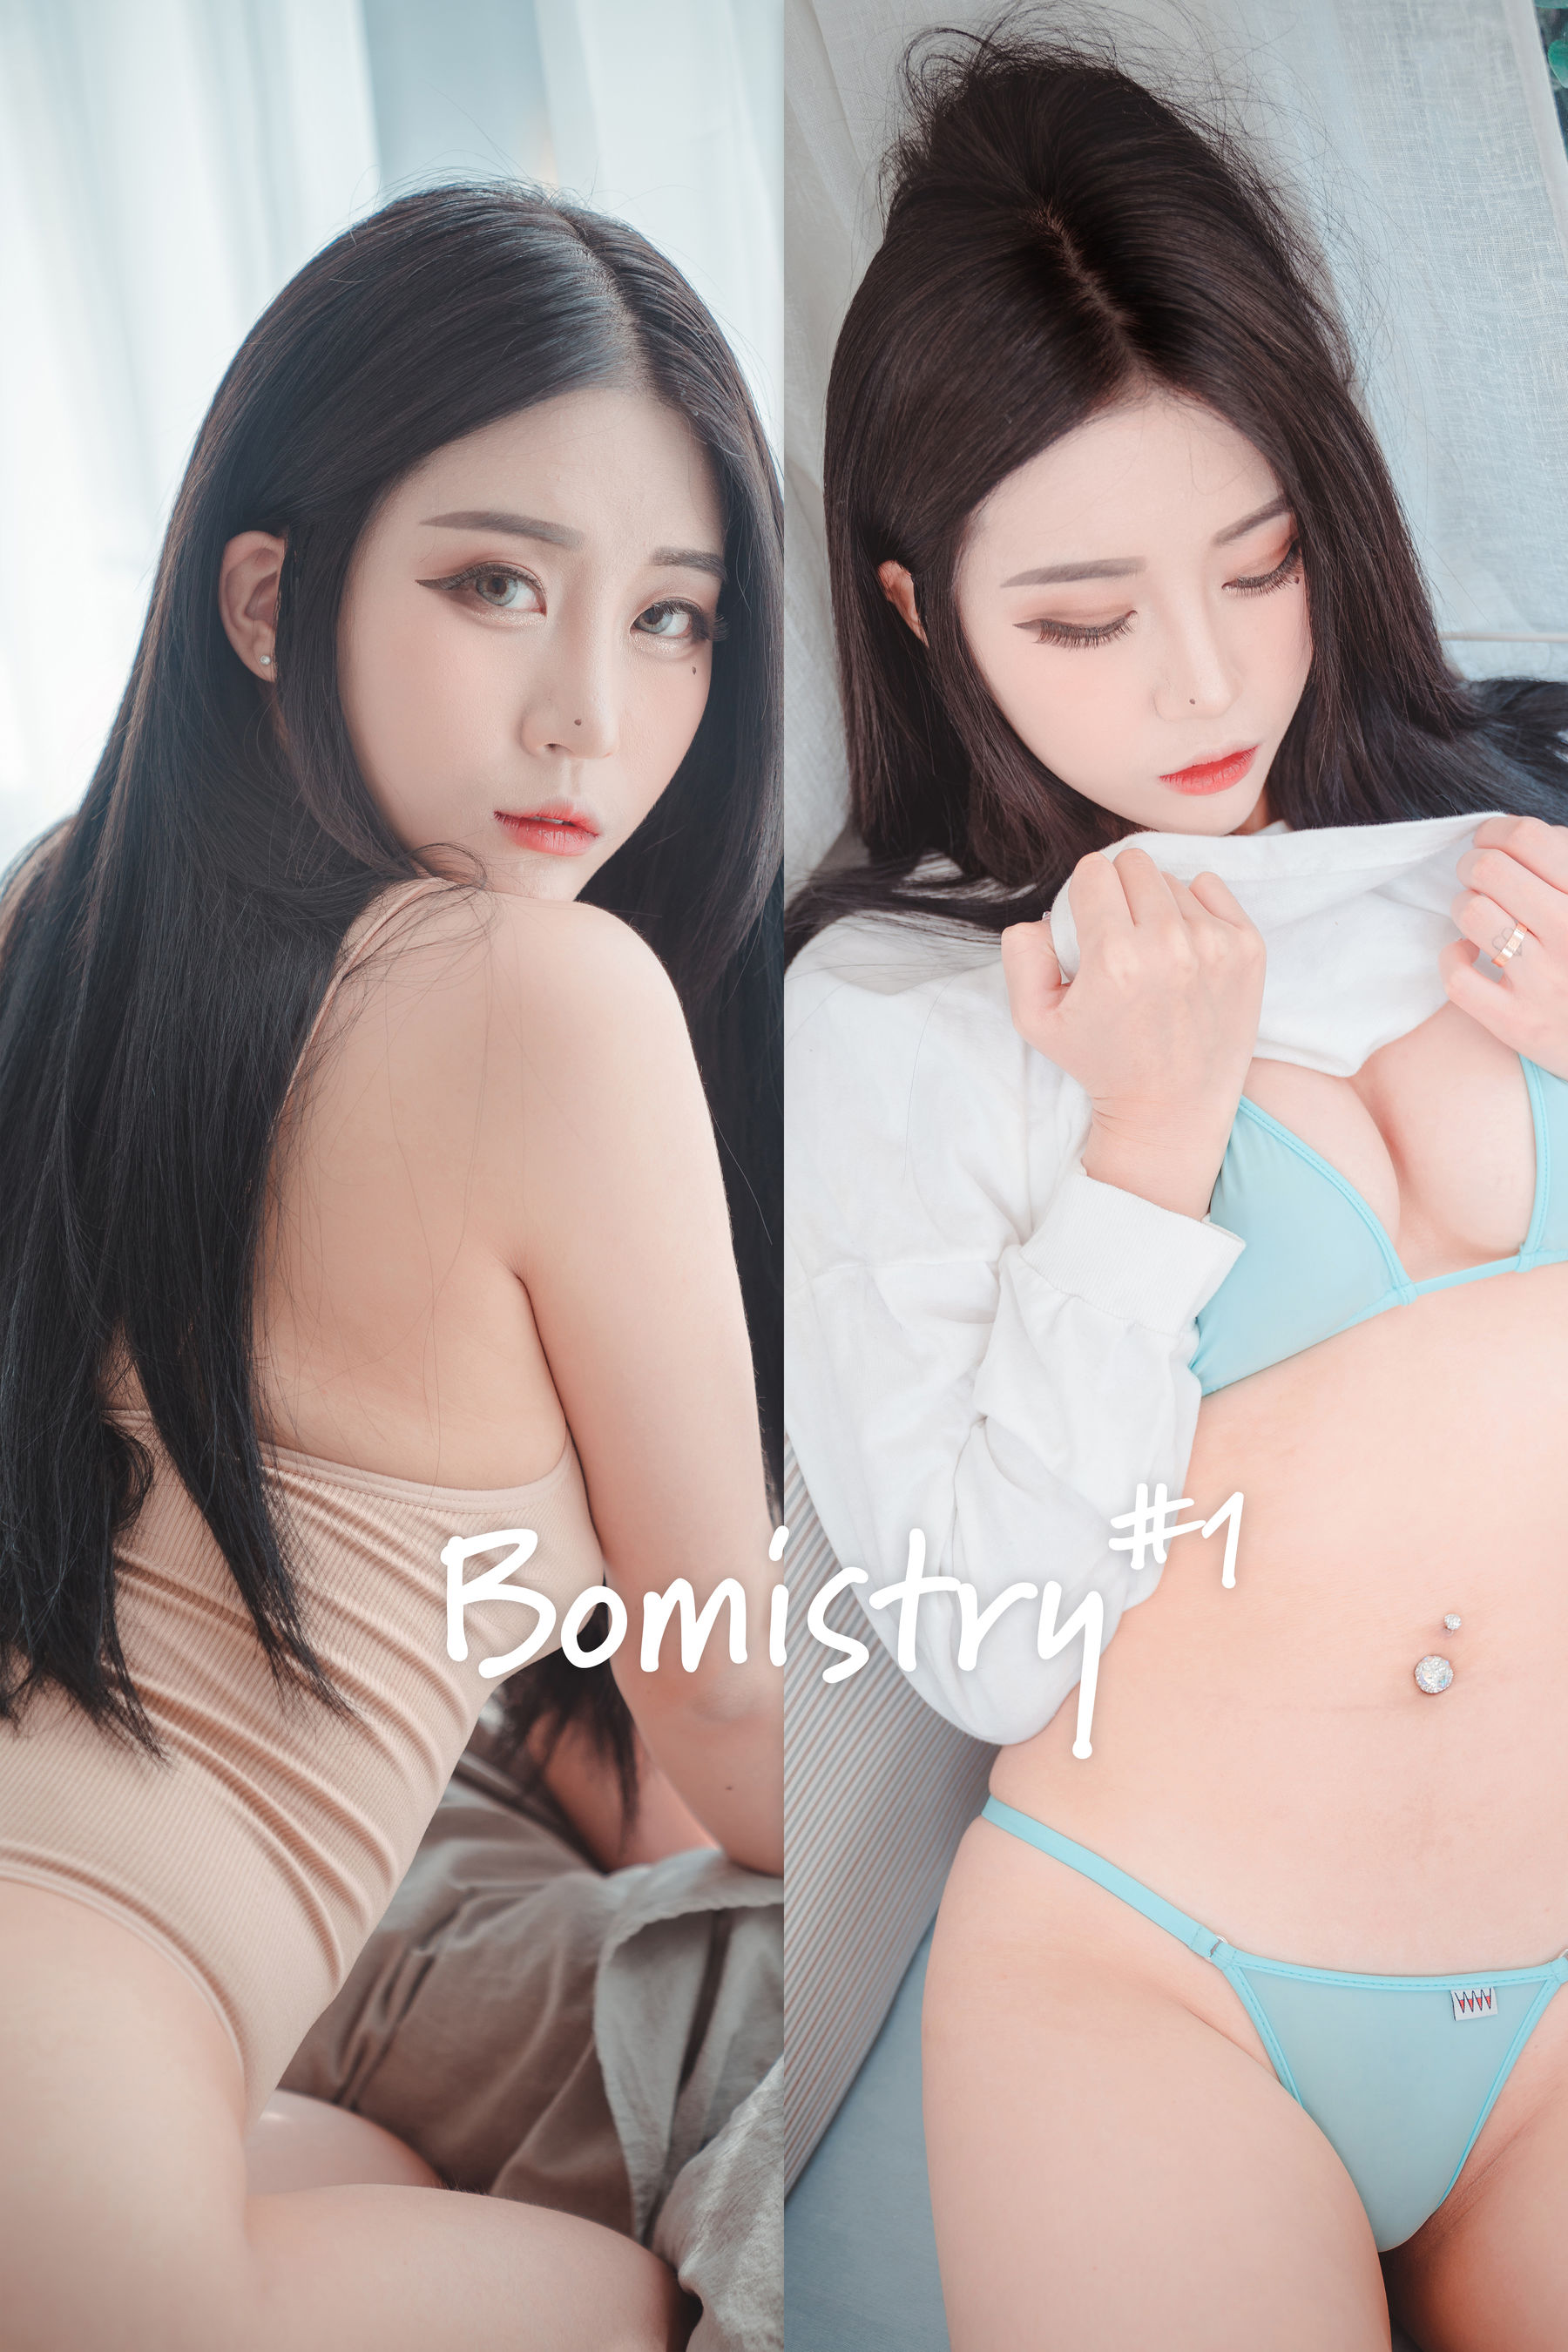 [DJAWA]  Bomi - Bomistry #1 第1张